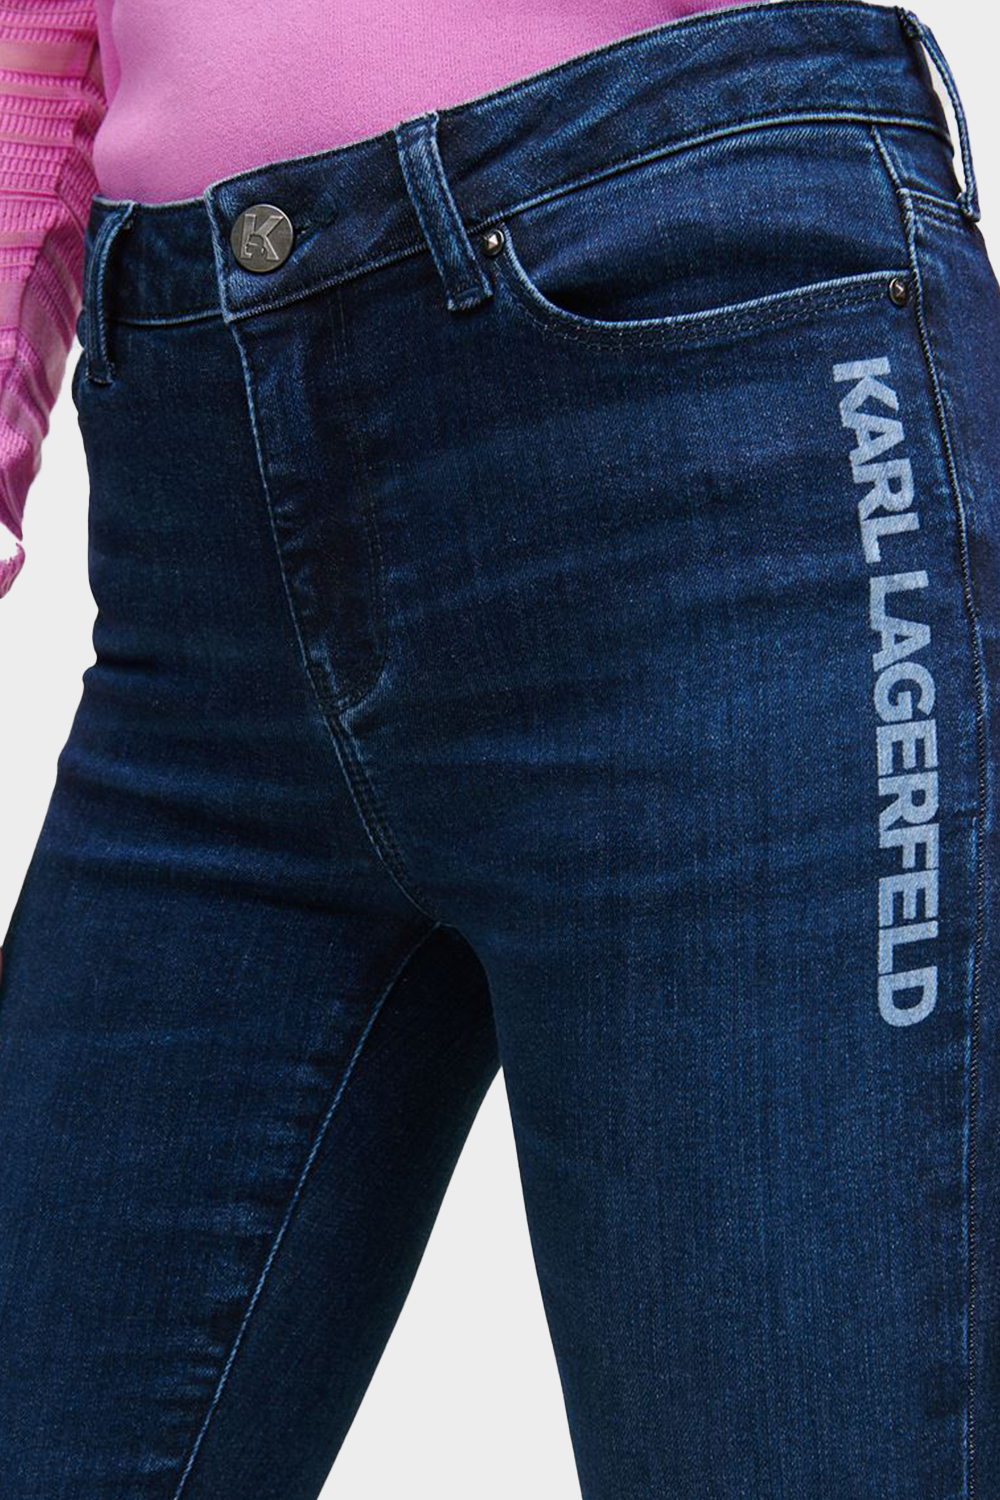 מכנסי ג'ינס לנשים בצבע כחול KARL LAGERFELD Vendome online | ונדום .